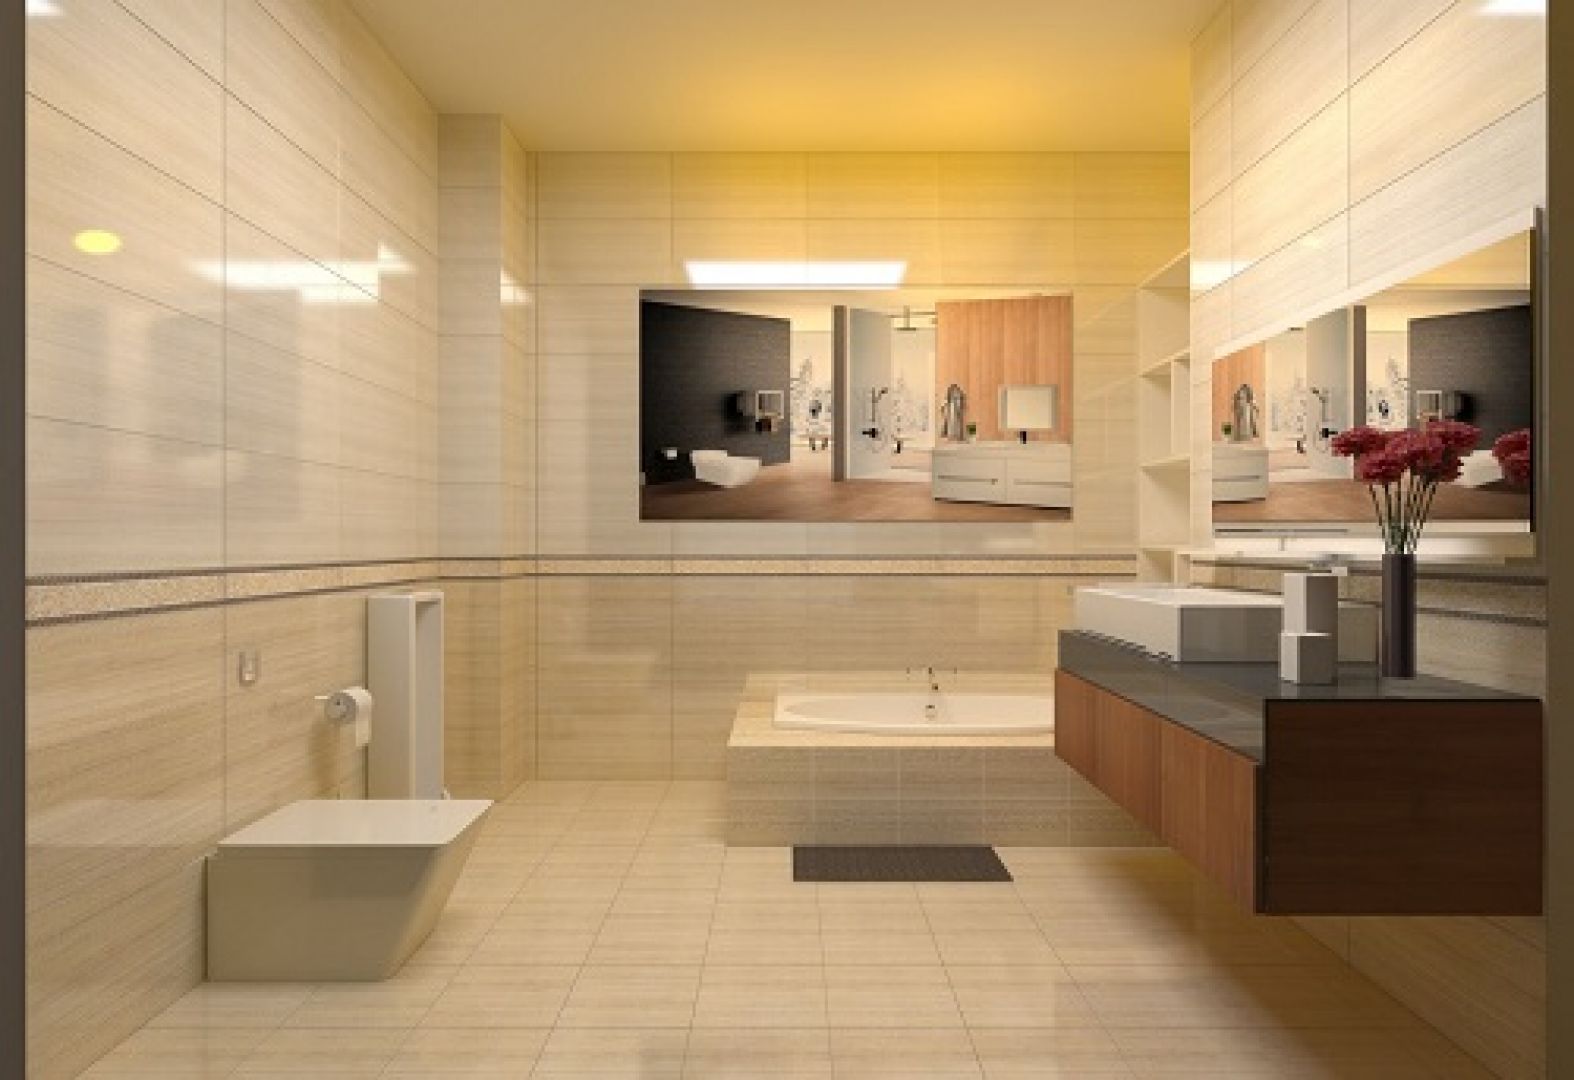 Gạch lát nền nhà tắm:
Năm 2024, việc sử dụng gạch lát nền nhà tắm đã trở thành xu hướng trong các thiết kế nội thất nhà tắm. Sự đa dạng về kiểu dáng, màu sắc và chất liệu của gạch lát nền nhà tắm đã giúp cho không gian phòng tắm trở nên sang trọng và hiện đại hơn bao giờ hết.